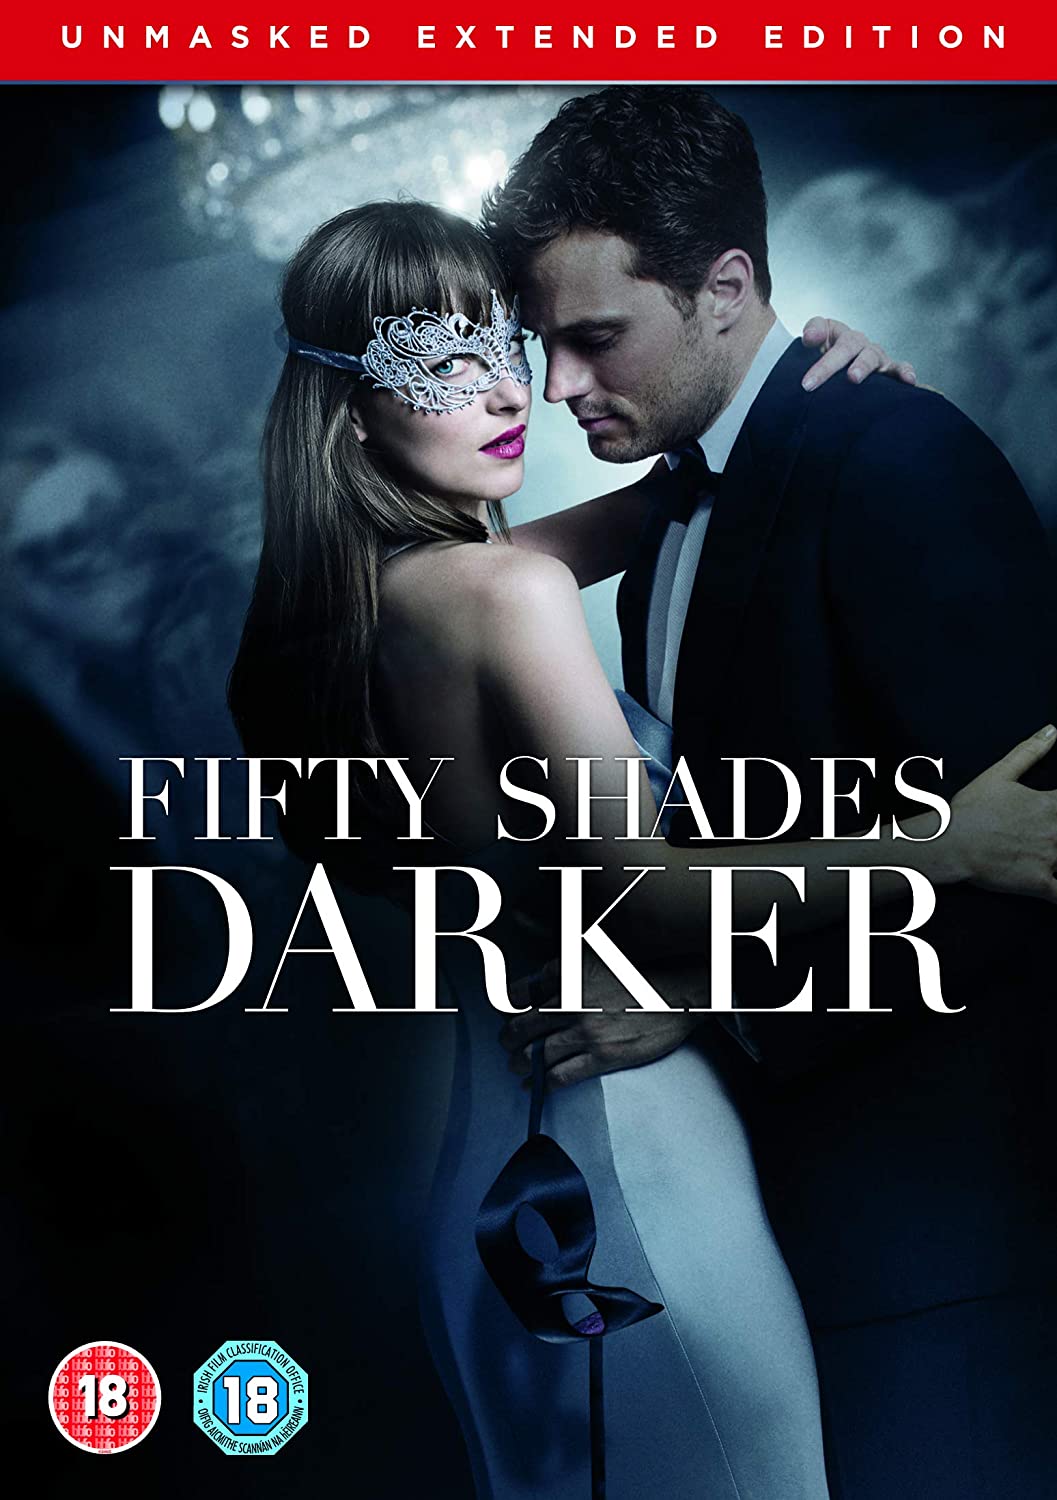 Fifty Shades Darker Unmasked Edition 2017 Dvd Warner Bros Shop Uk 